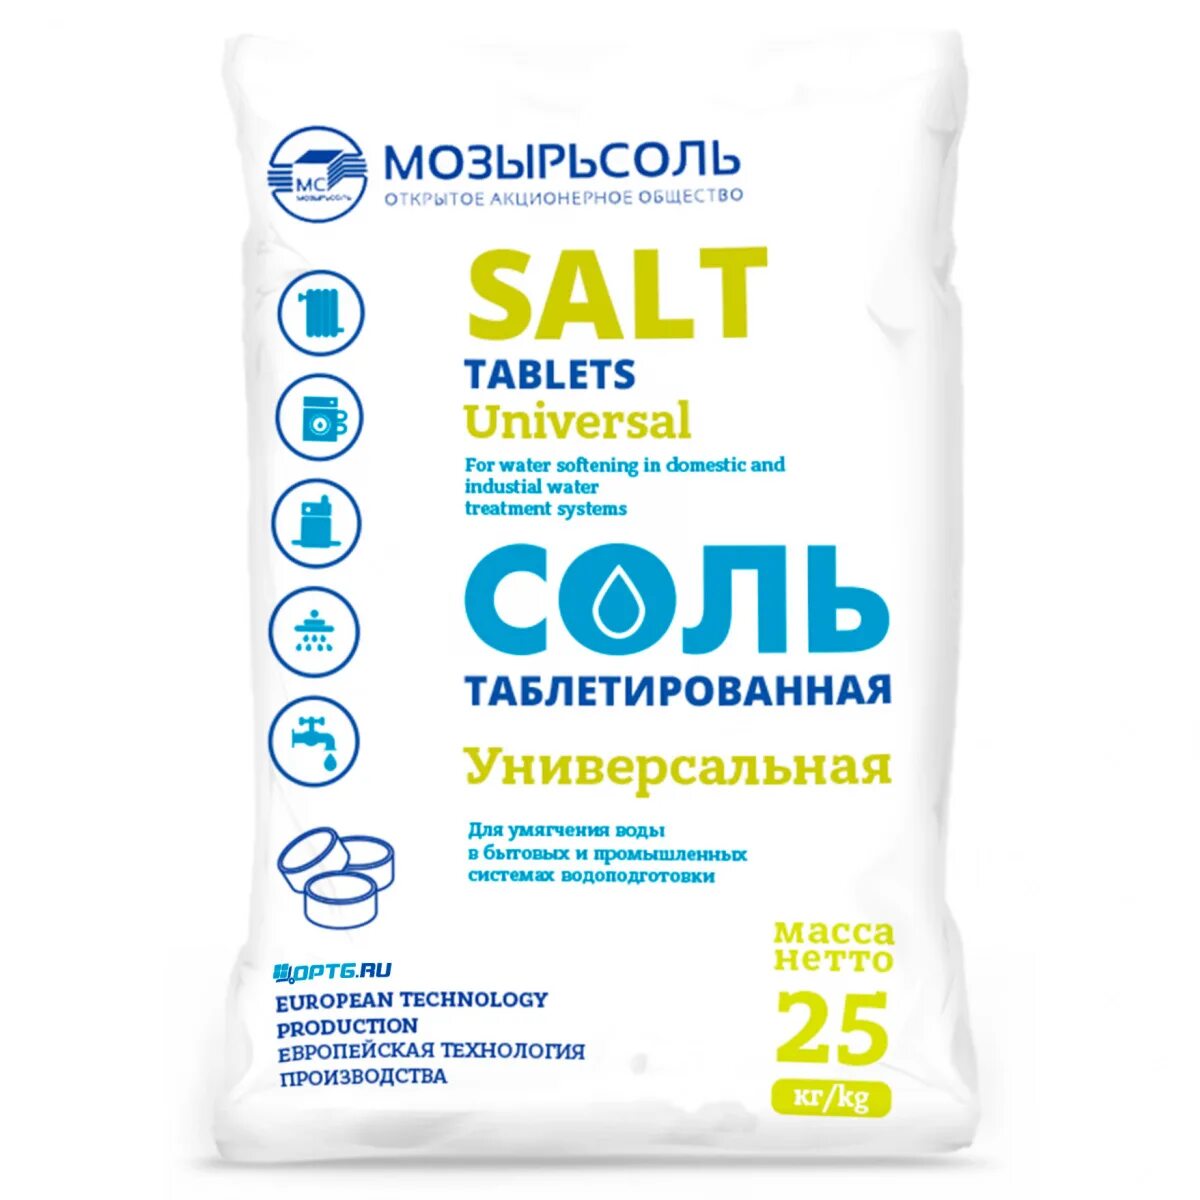 Купить соль мозырь 25 кг. Соль таблетированная для водоочистки 25 кг Мозырьсоль. Соль таблетированная Руссоль 25 кг. Мешок Мозырьсоль 25 кг. Таблетированная соль Экстра соль 25 кг.